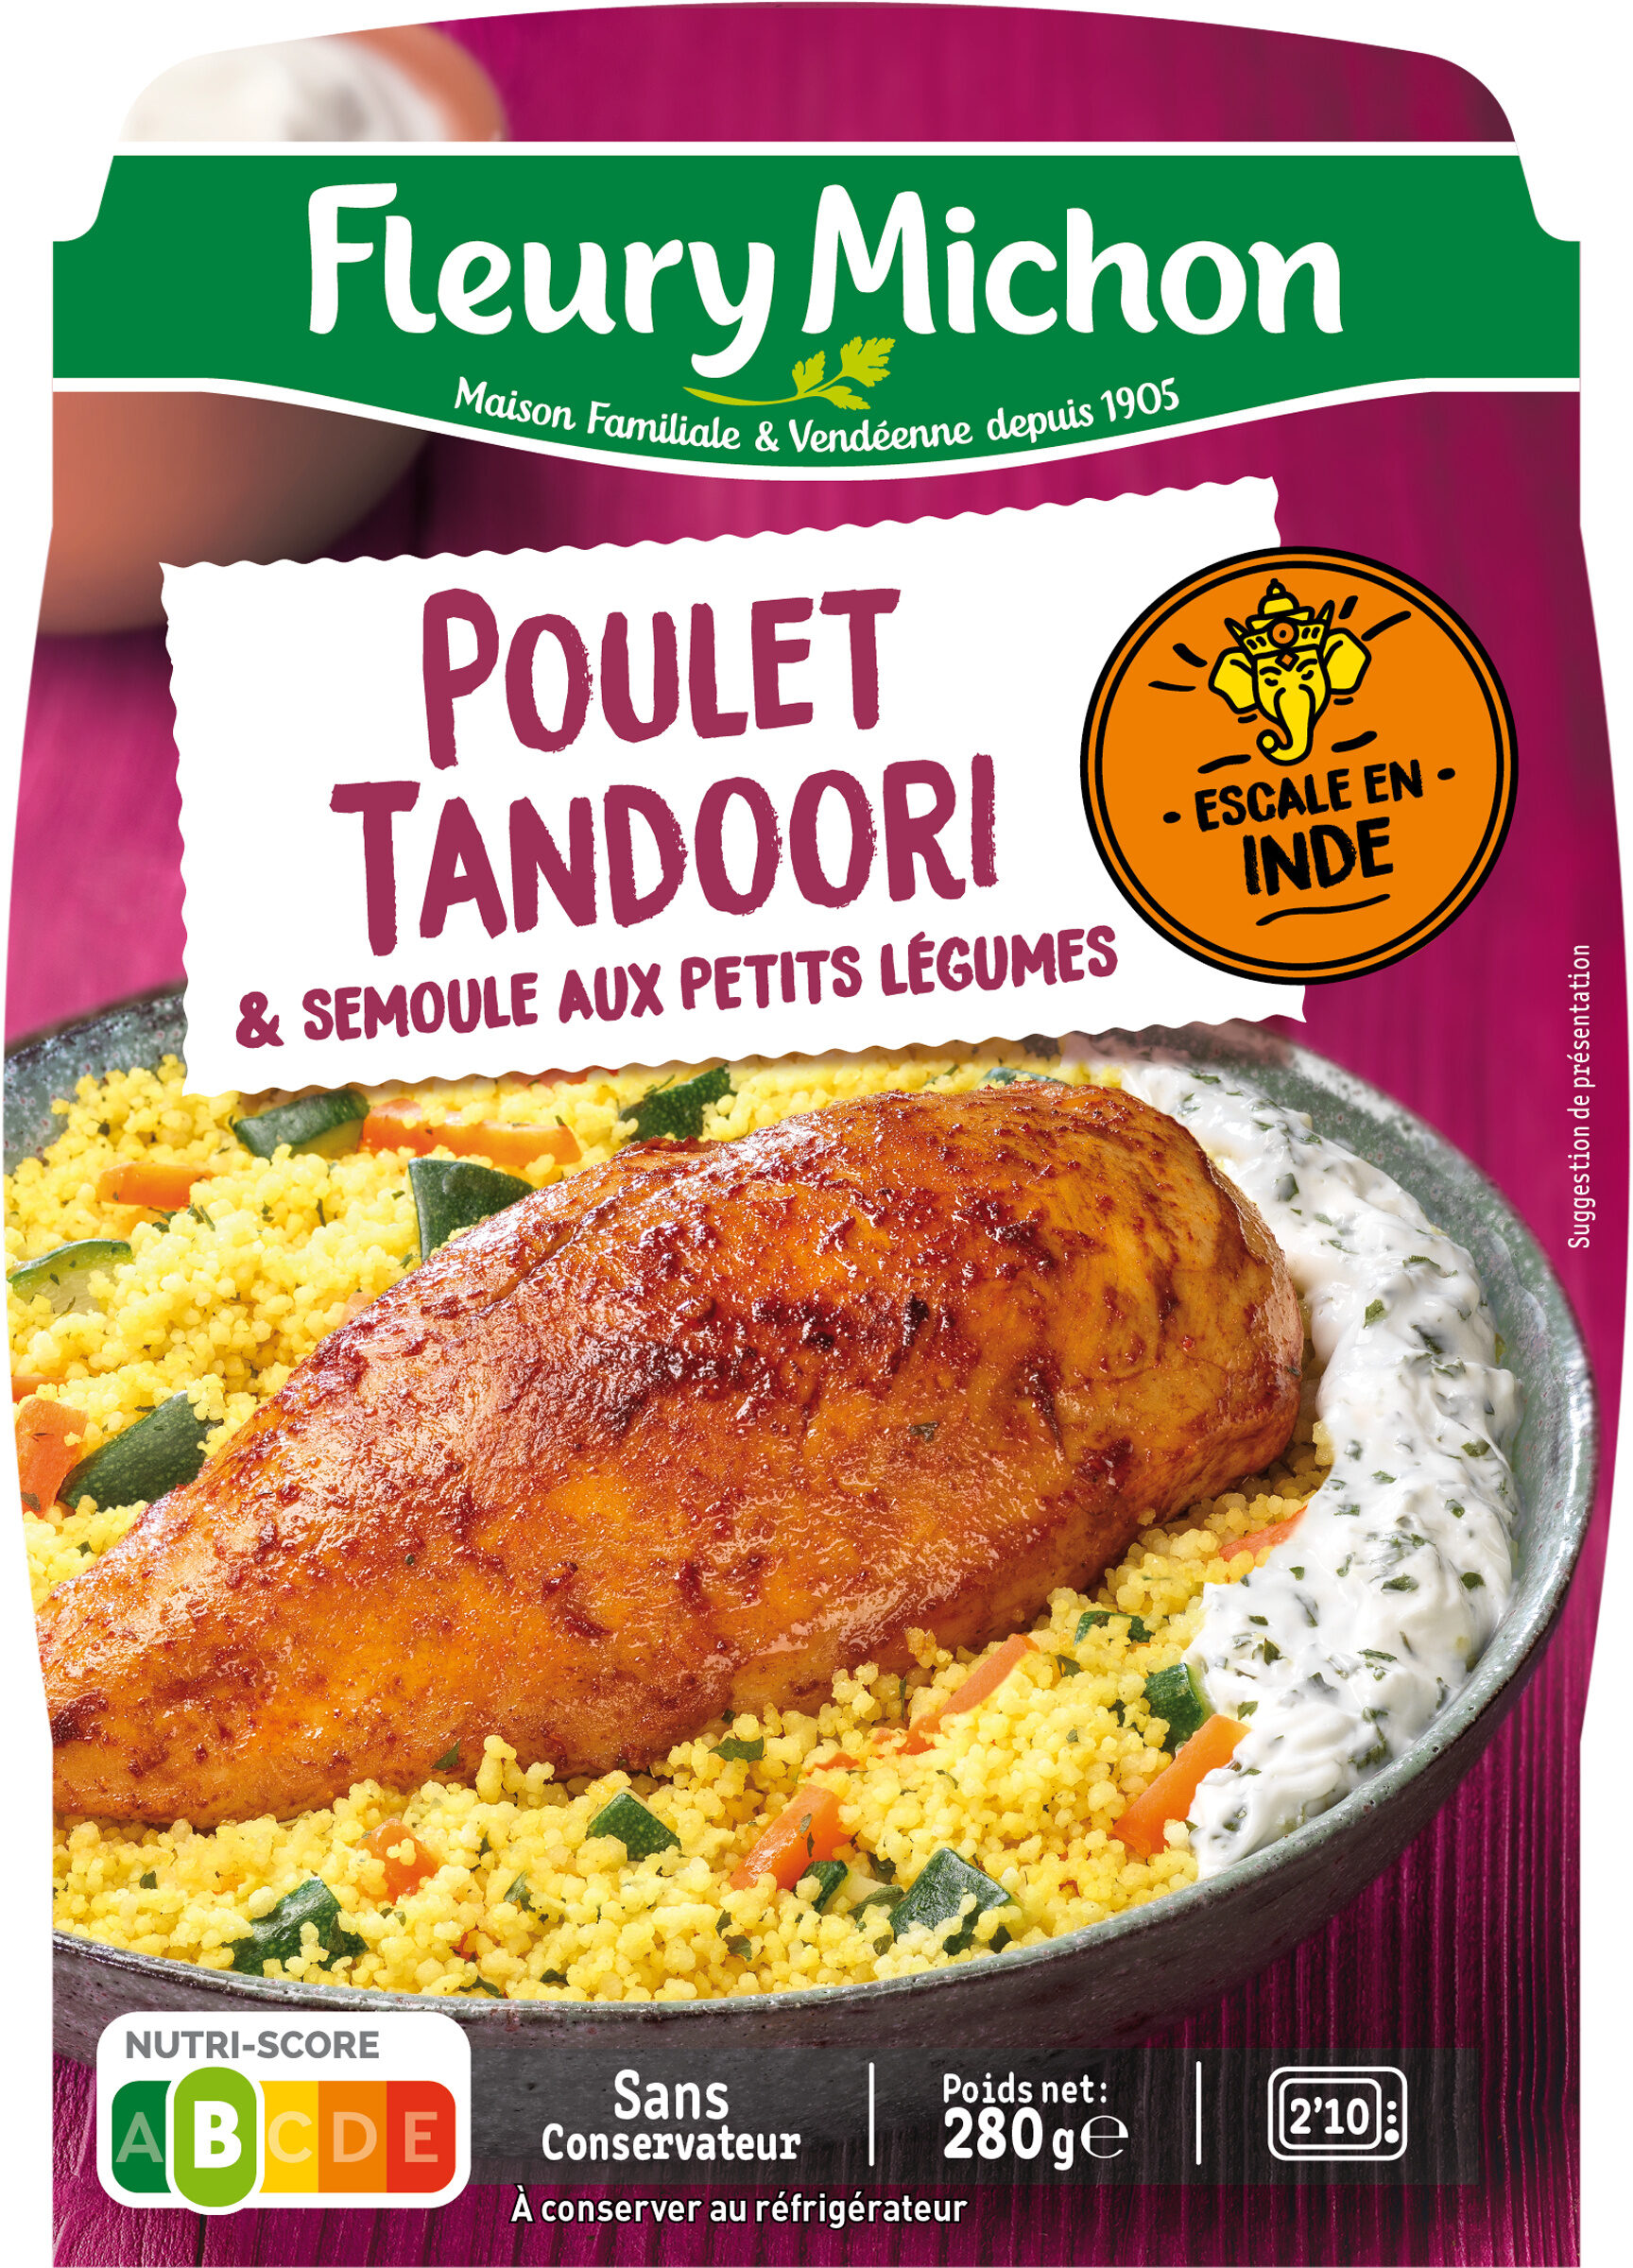 Le Poulet tandoori semoule aux petits légumes - Produit